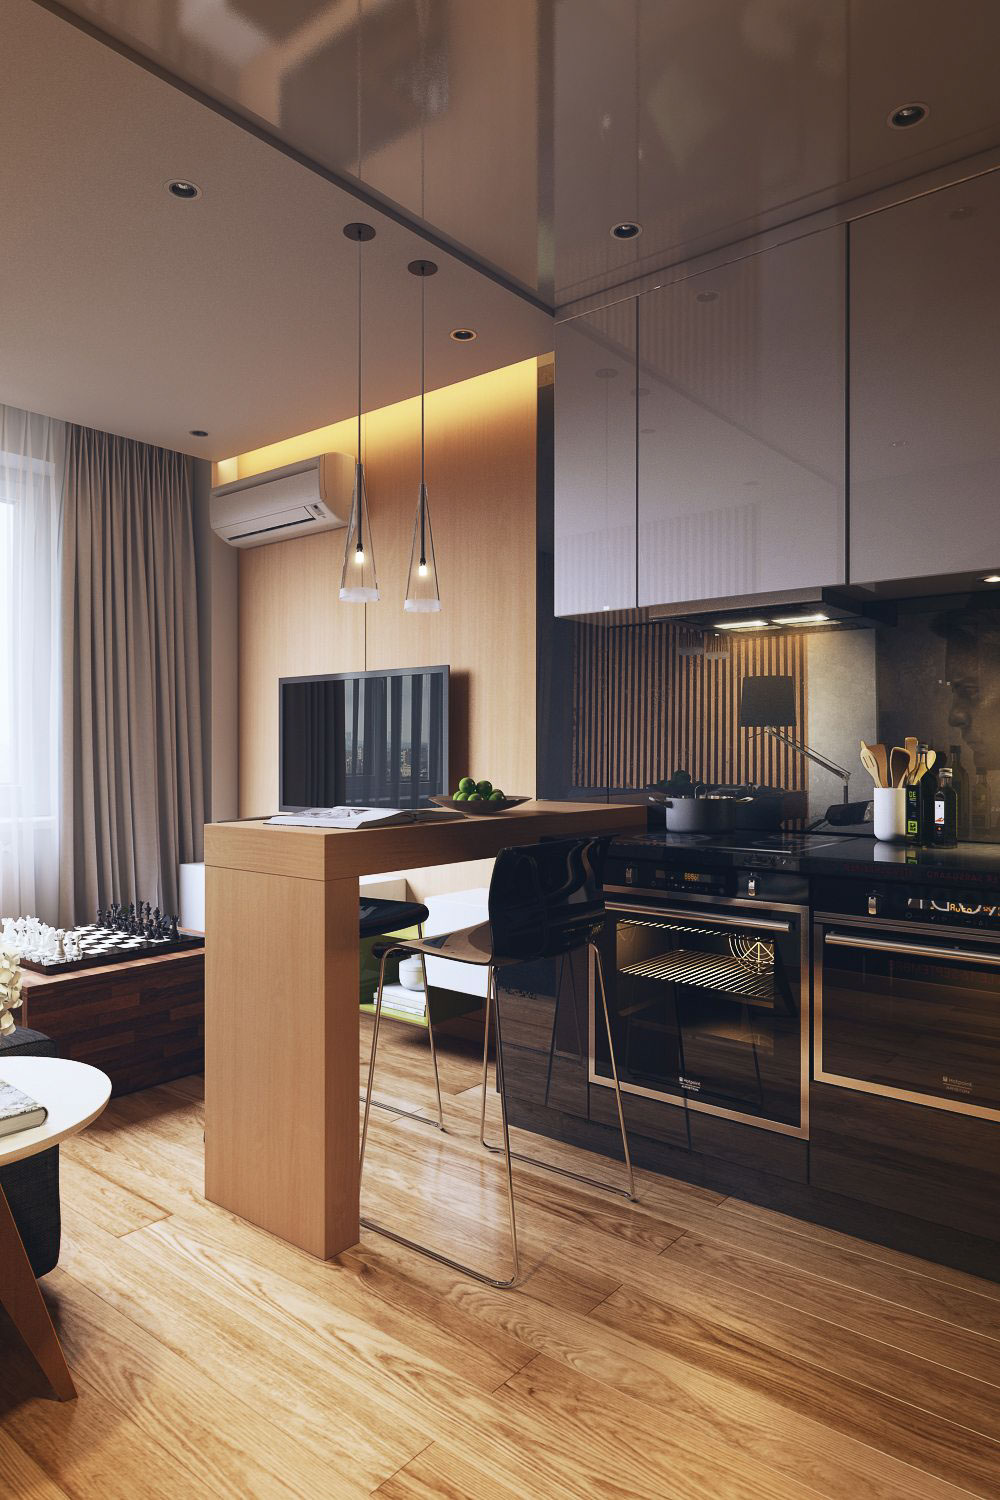 Modern concept kitchen design